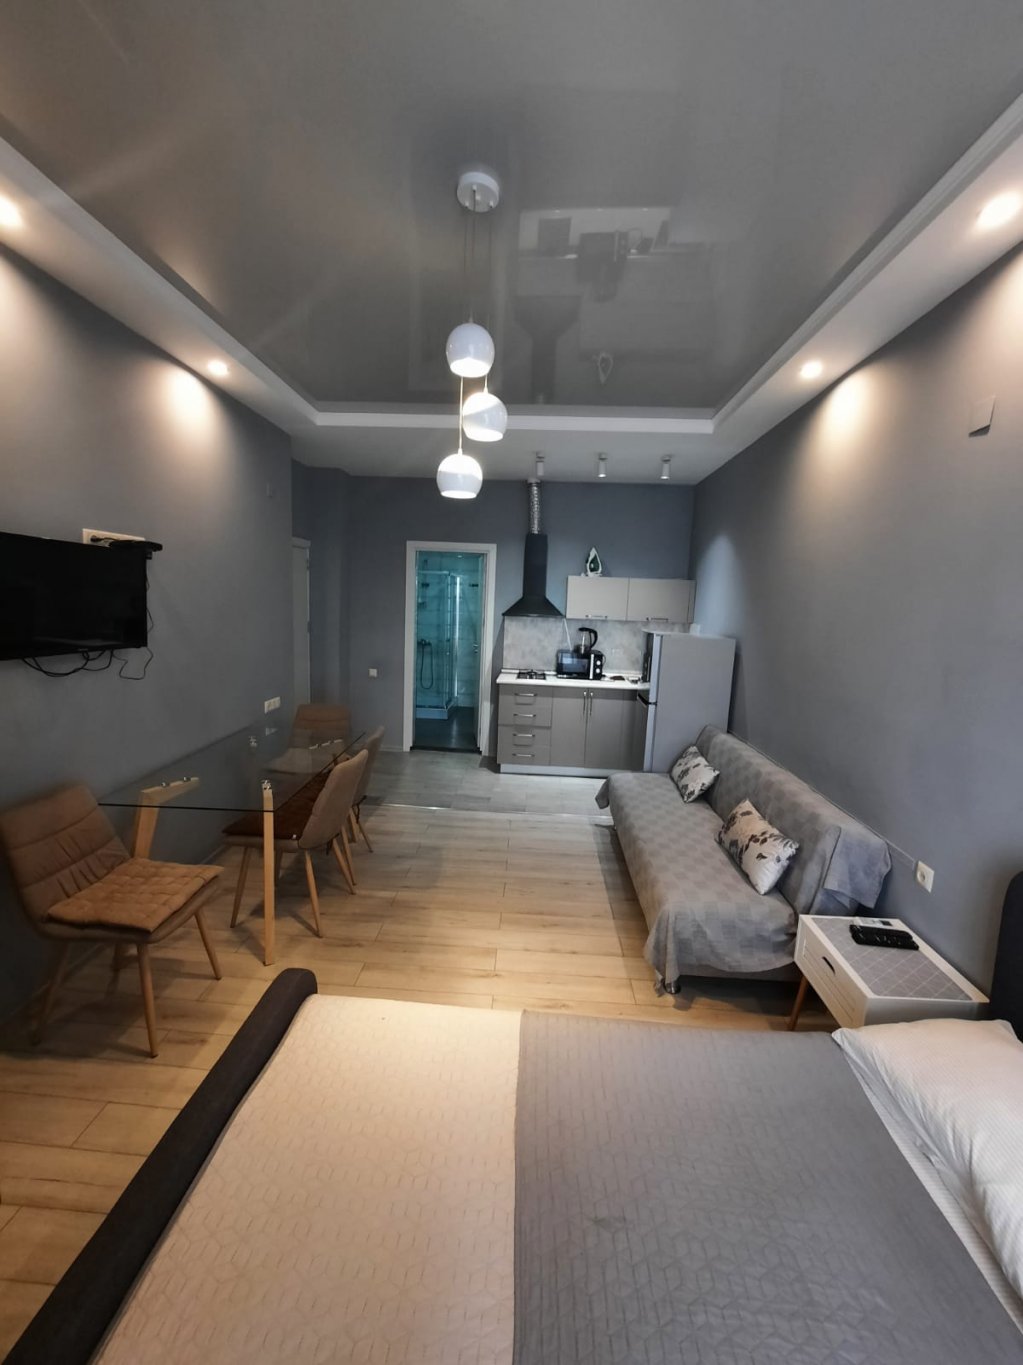 Studio apartment id-927 -  rent an apartment in Batumi